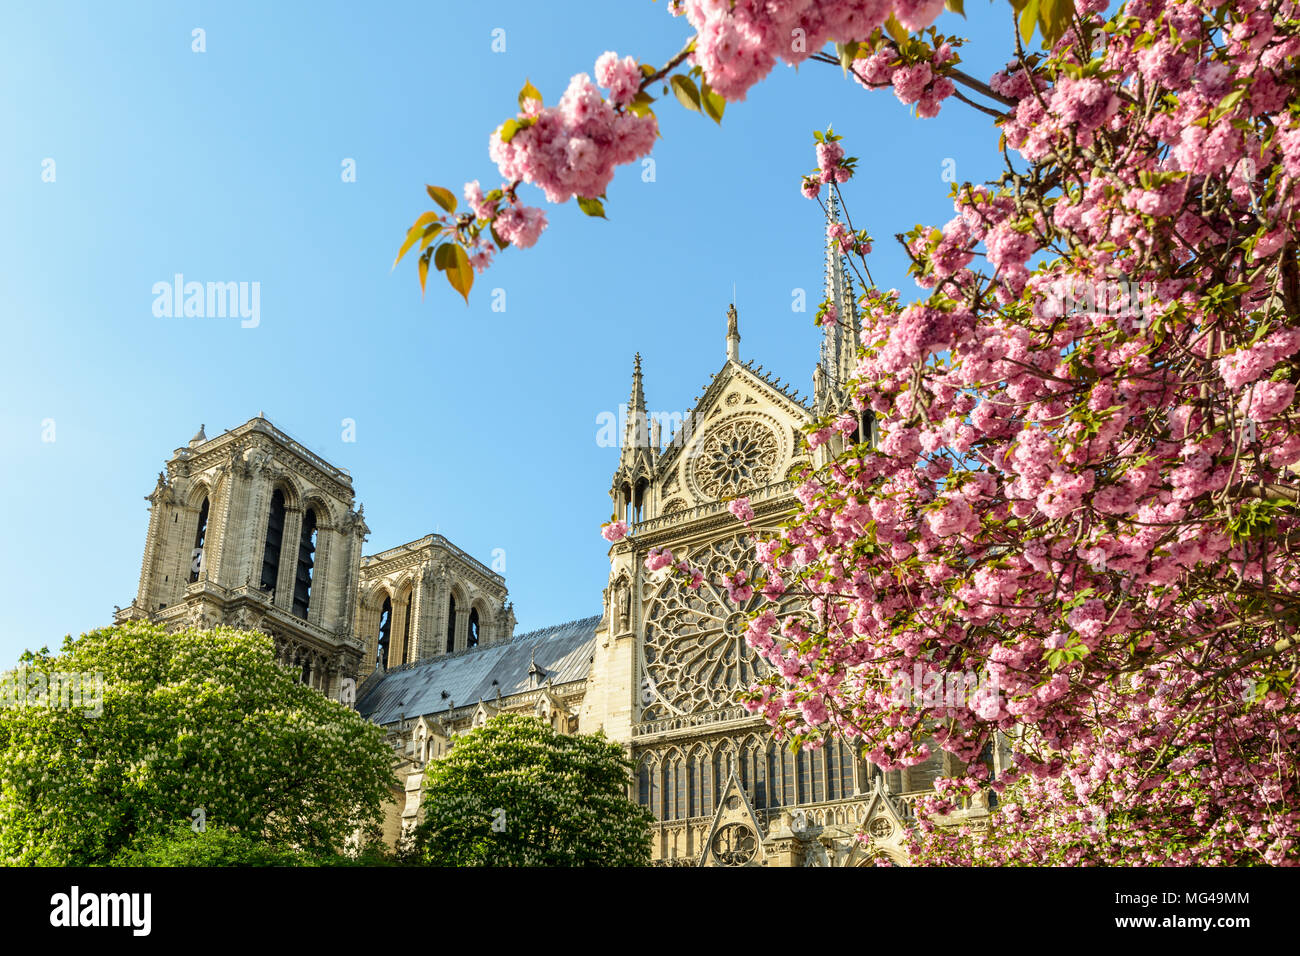 Il rosone e i campanili di Notre Dame de Paris cathedral visto attraverso i rami carichi di fiori di ciliegi giapponesi, in piena fioritura. Foto Stock